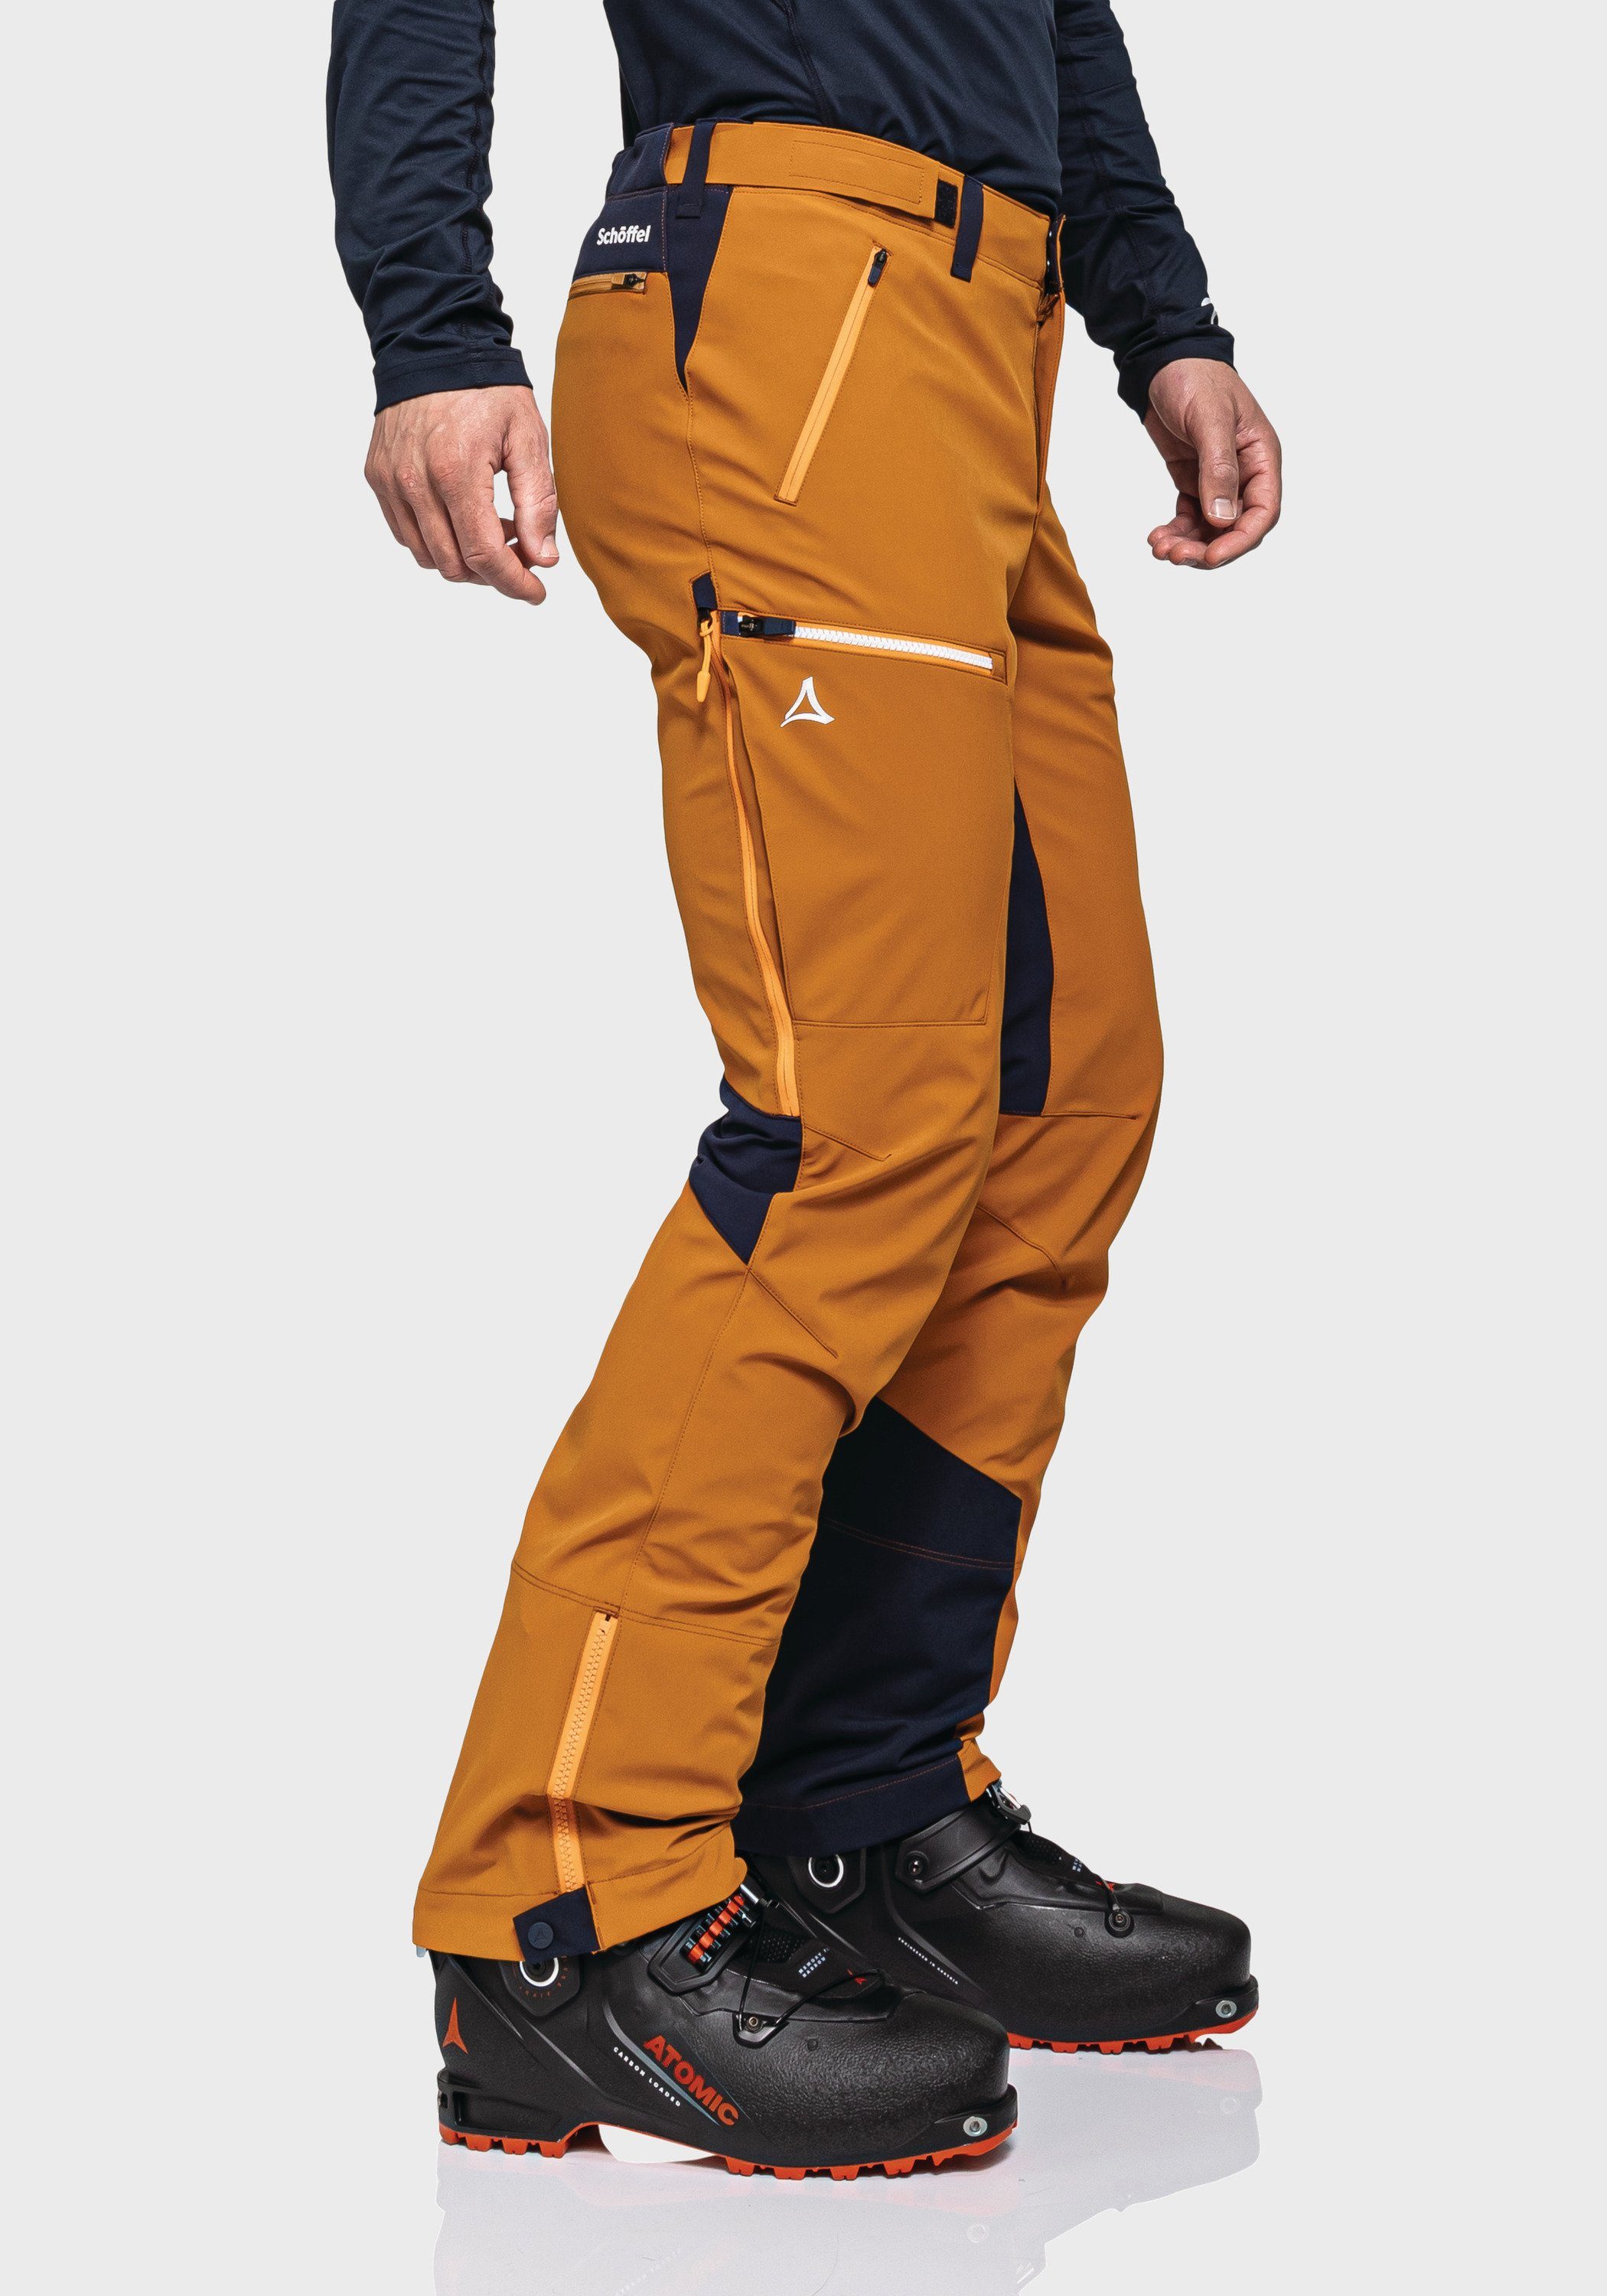 M Softshell orange Schöffel Outdoorhose Matrei Pants